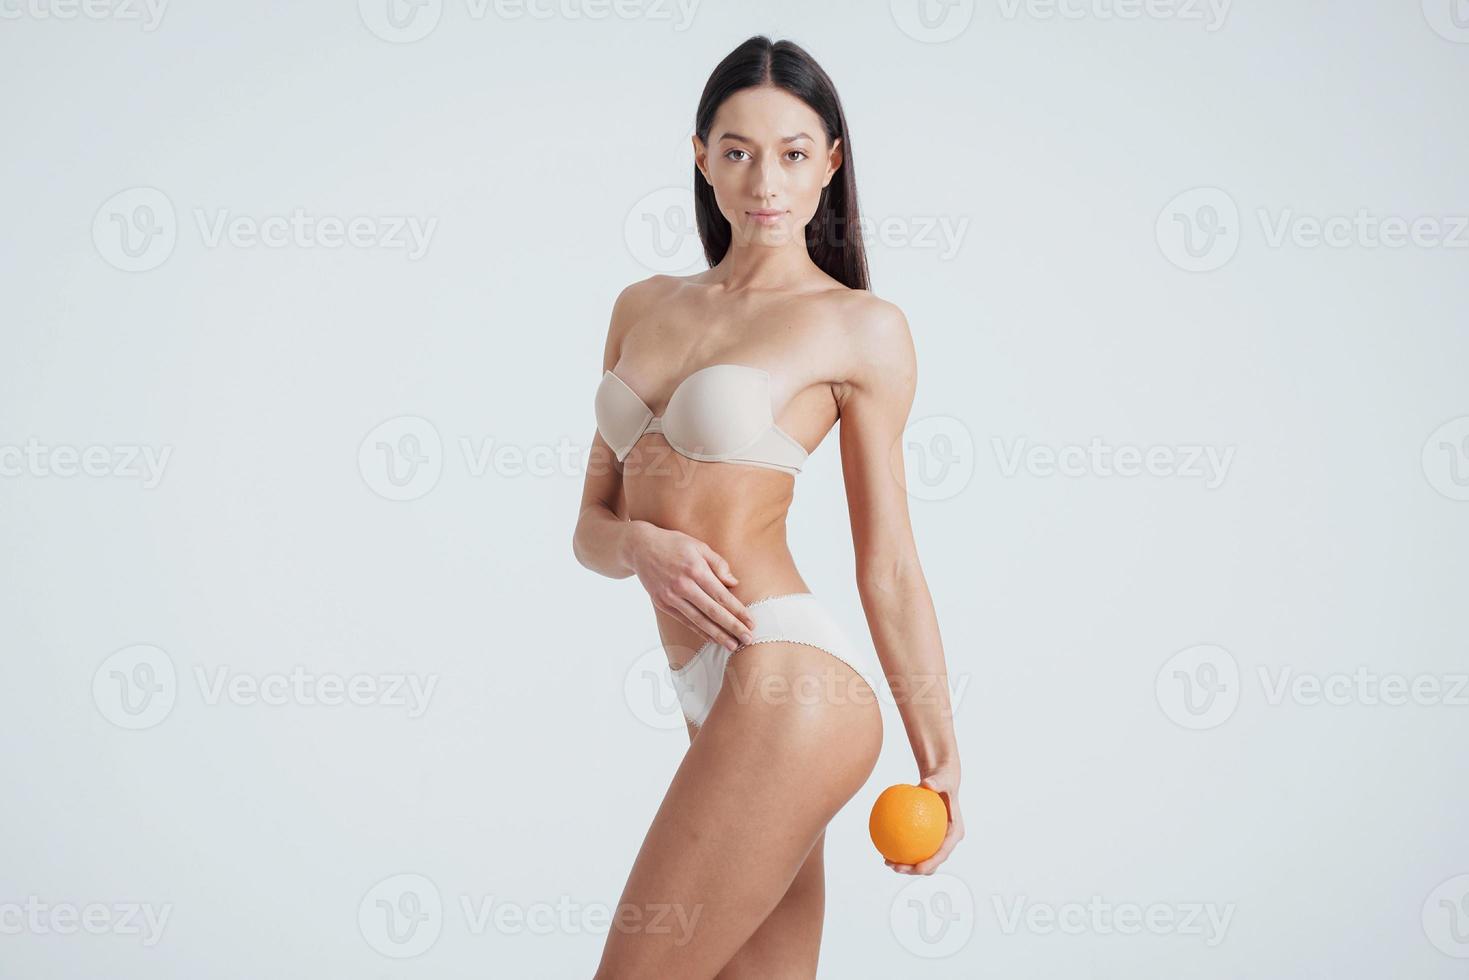 virando o lado esquerdo. garota de corpo fitness em cueca posando para uma foto com frutas nas mãos